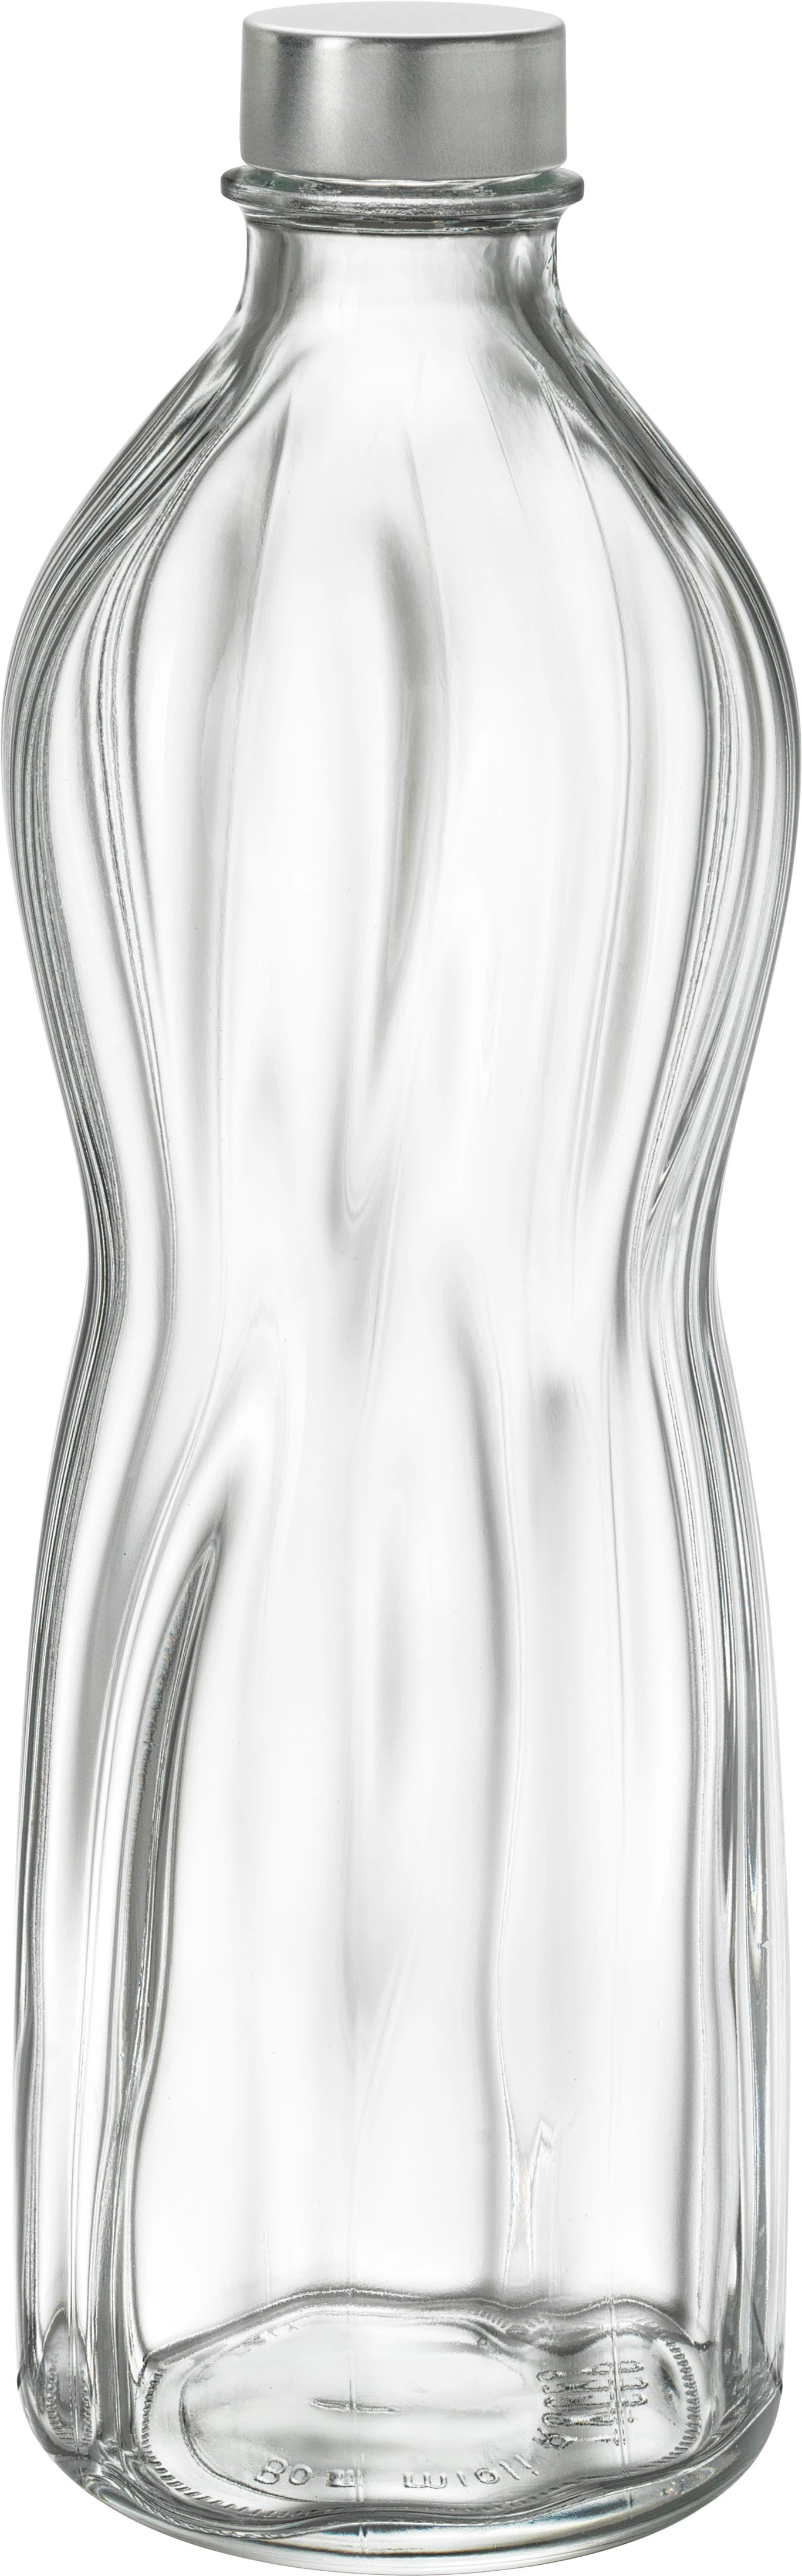 Bormioli Aqua flaske med skruelåg, 1 ltr.